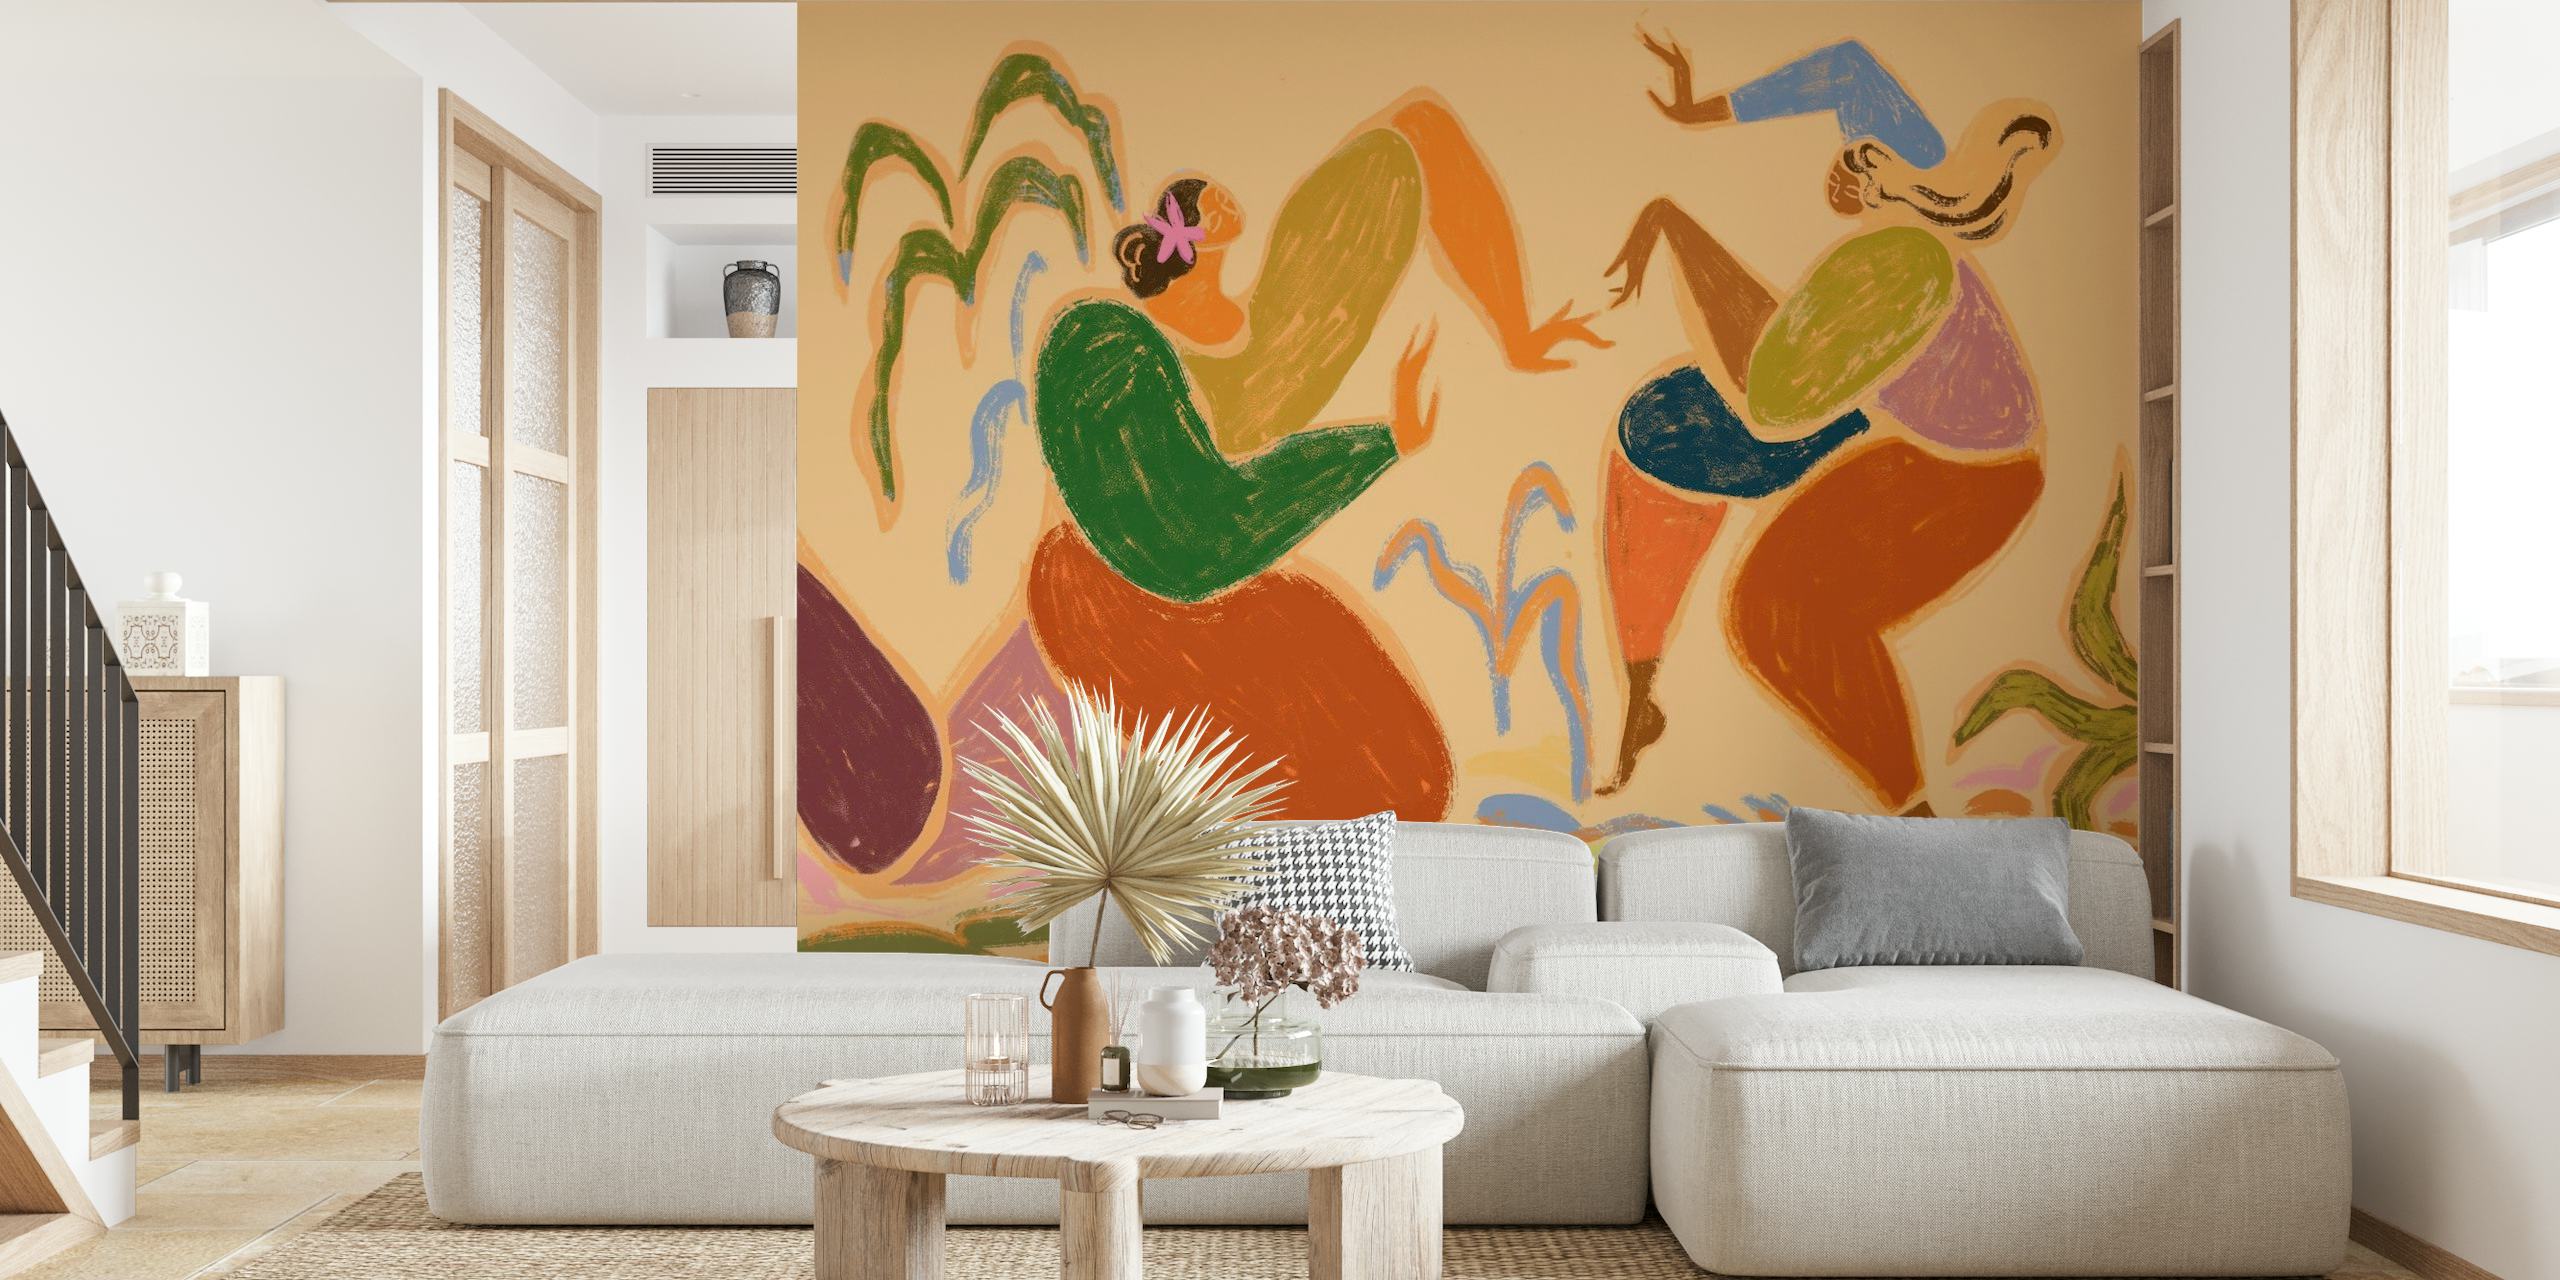 Abstraktní nástěnná malba s taneční tematikou v zemitých barvách zobrazující rytmické postavy v pohybu